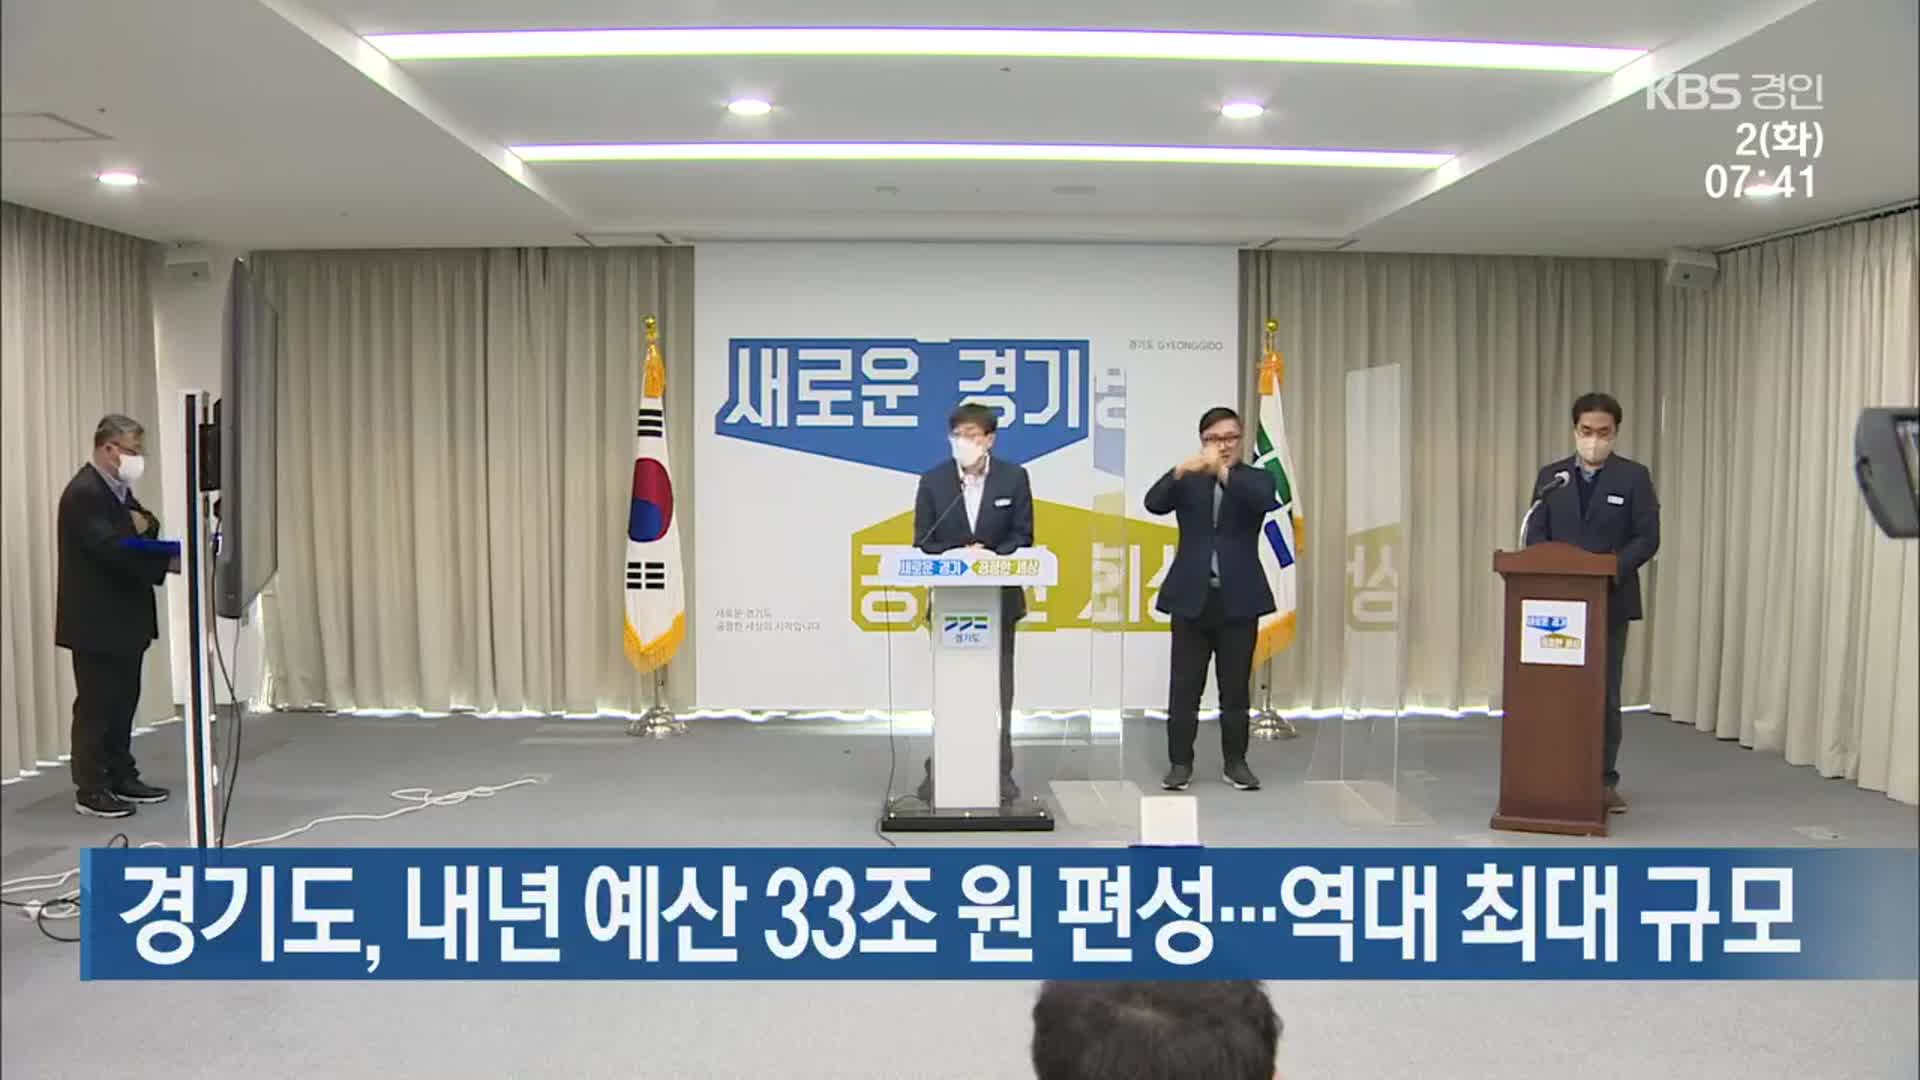 경기도, 내년 예산 33조 원 편성…역대 최대 규모